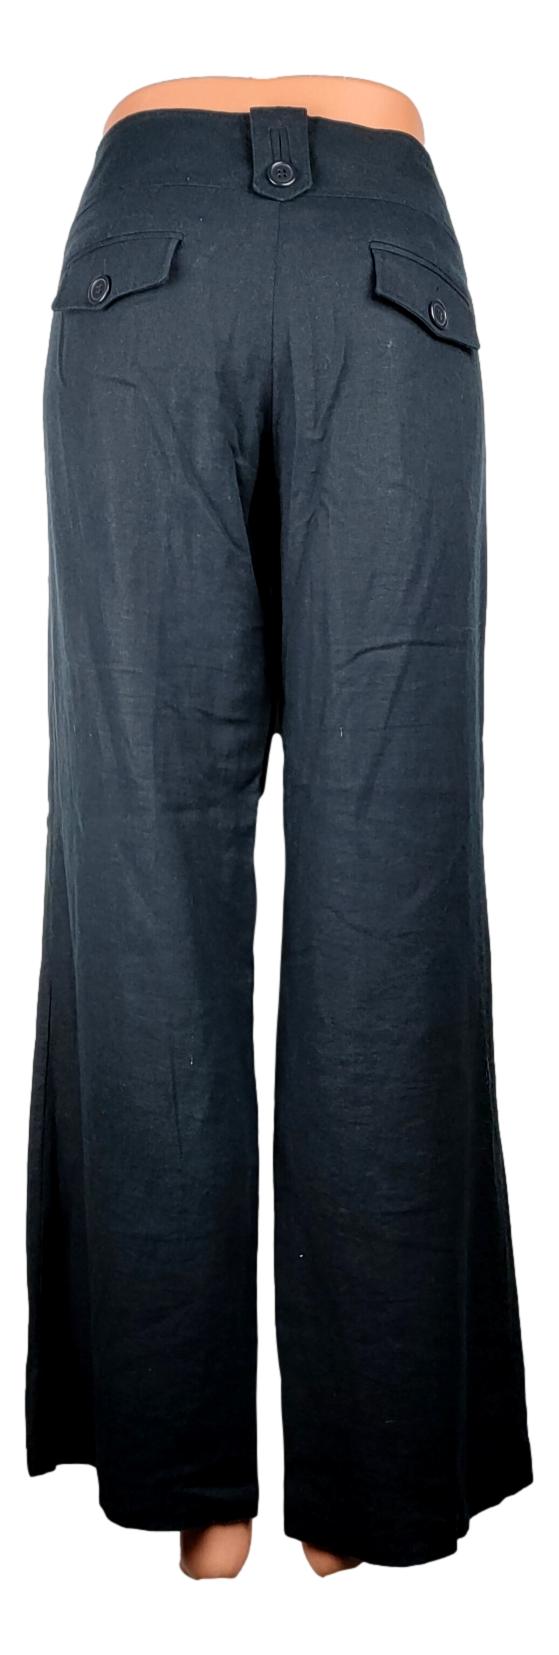 Pantalon New Look - Taille 38